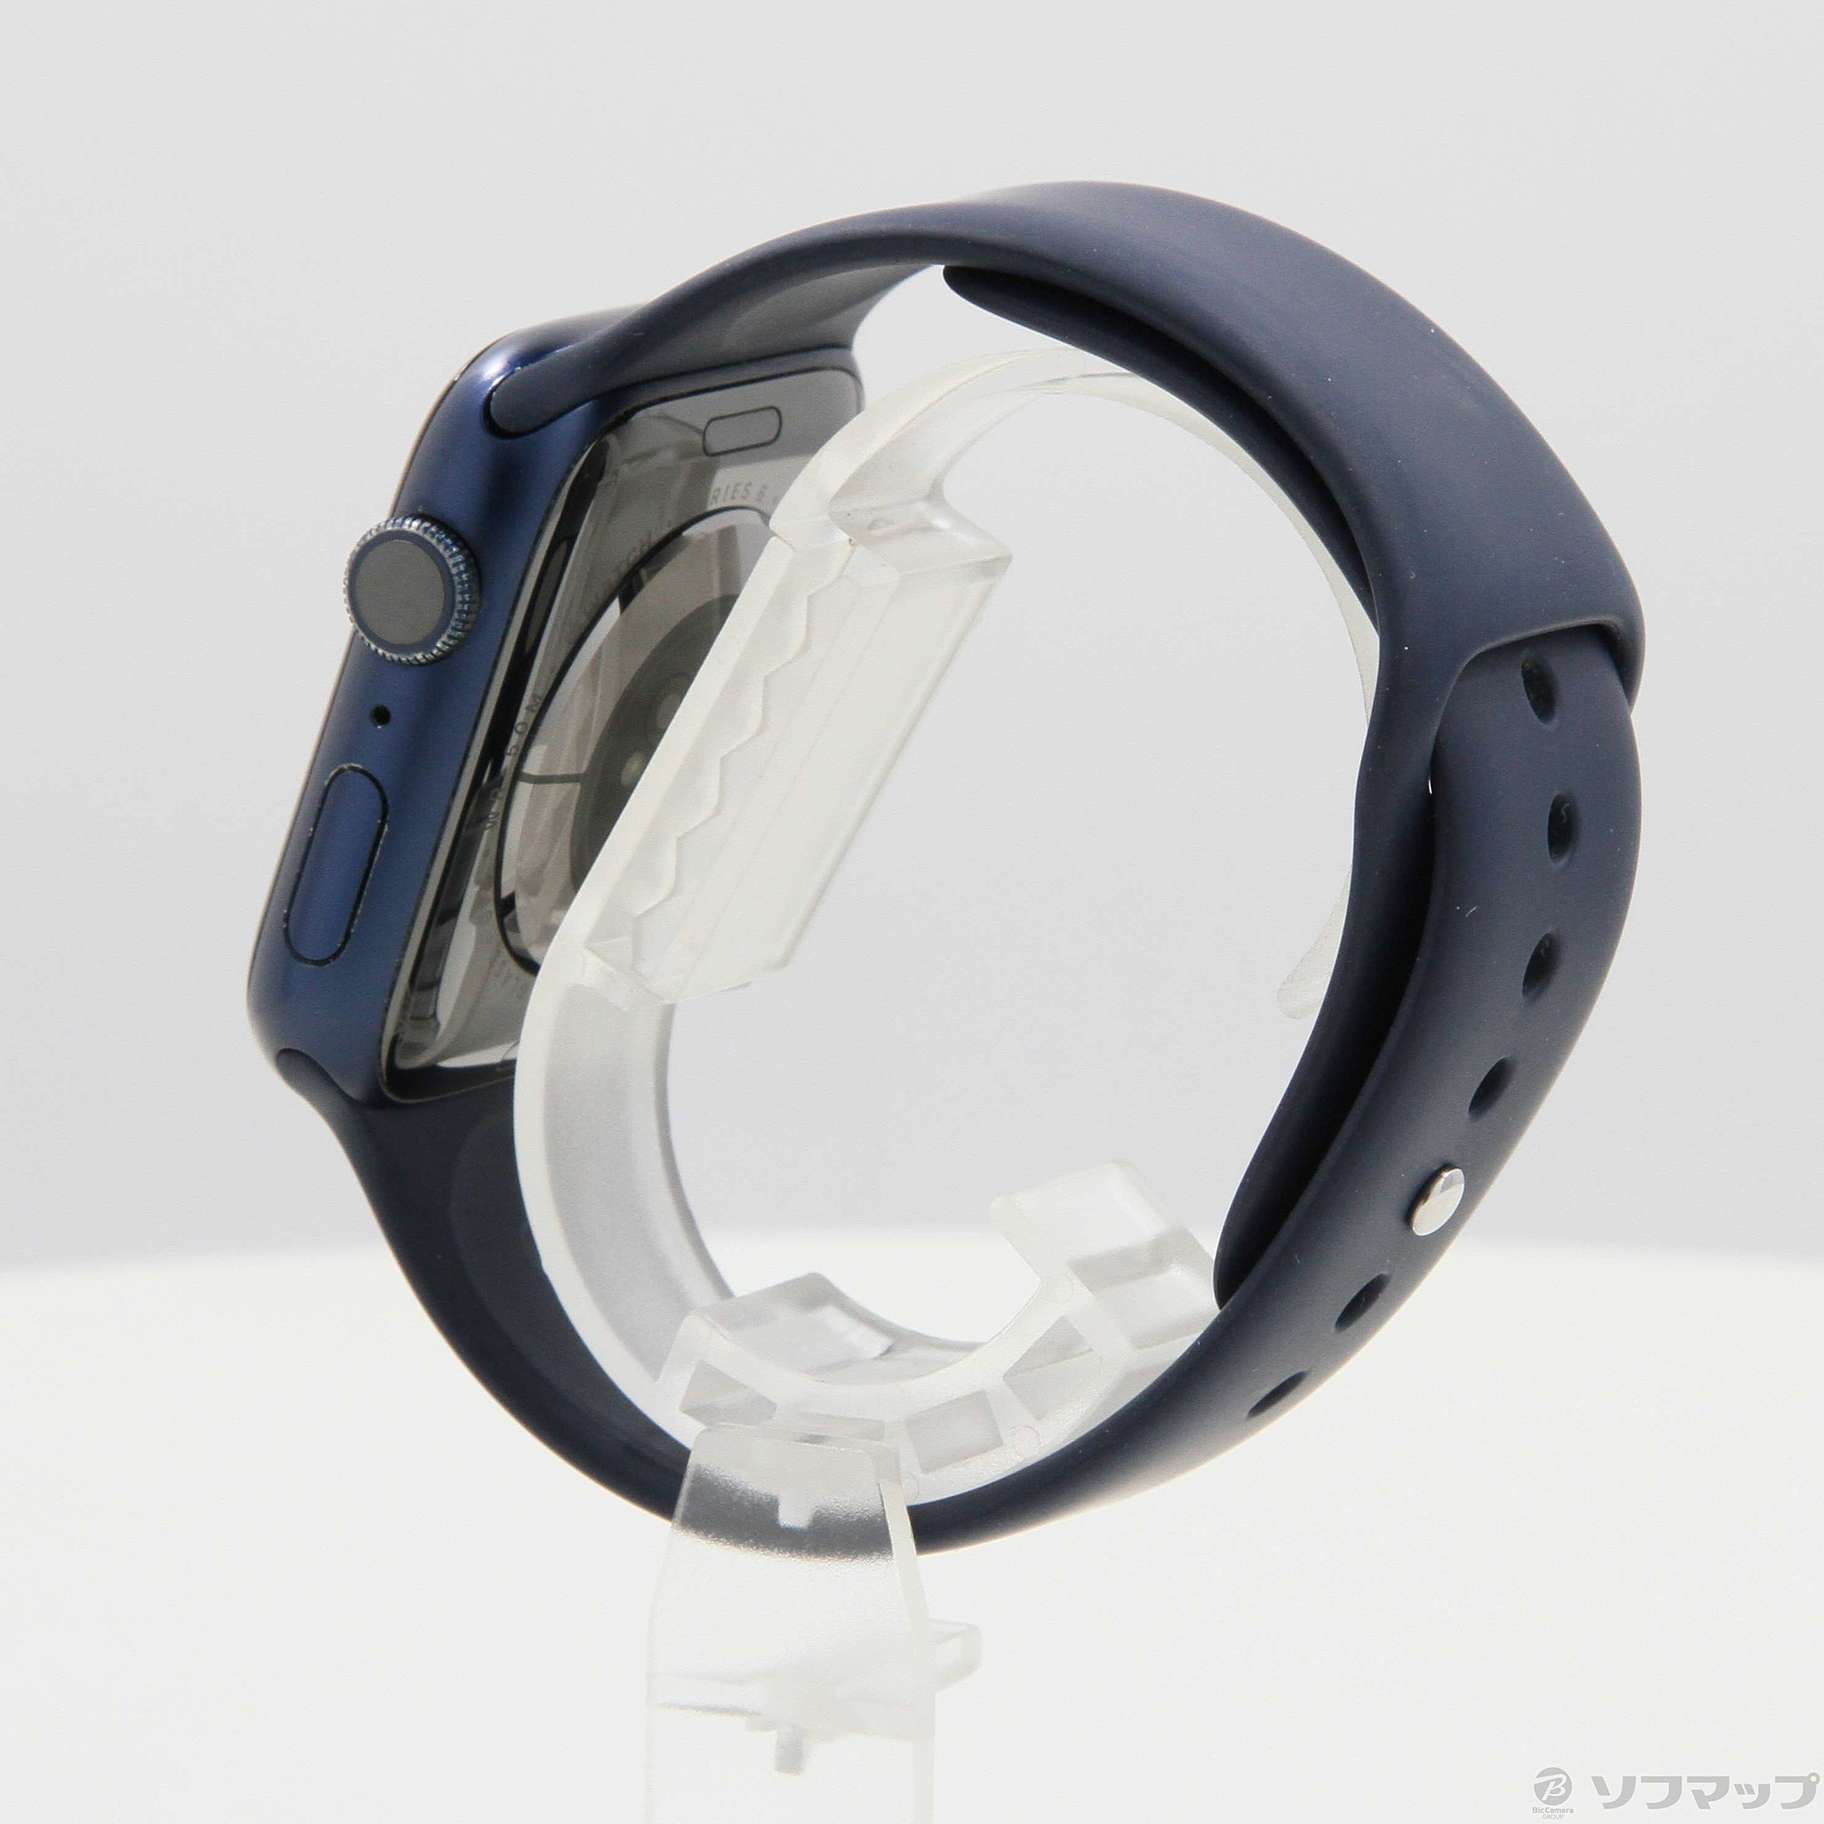 〔中古品〕 Apple Watch Series 6 GPS 44mm ブルーアルミニウムケース ディープネイビースポーツバンド